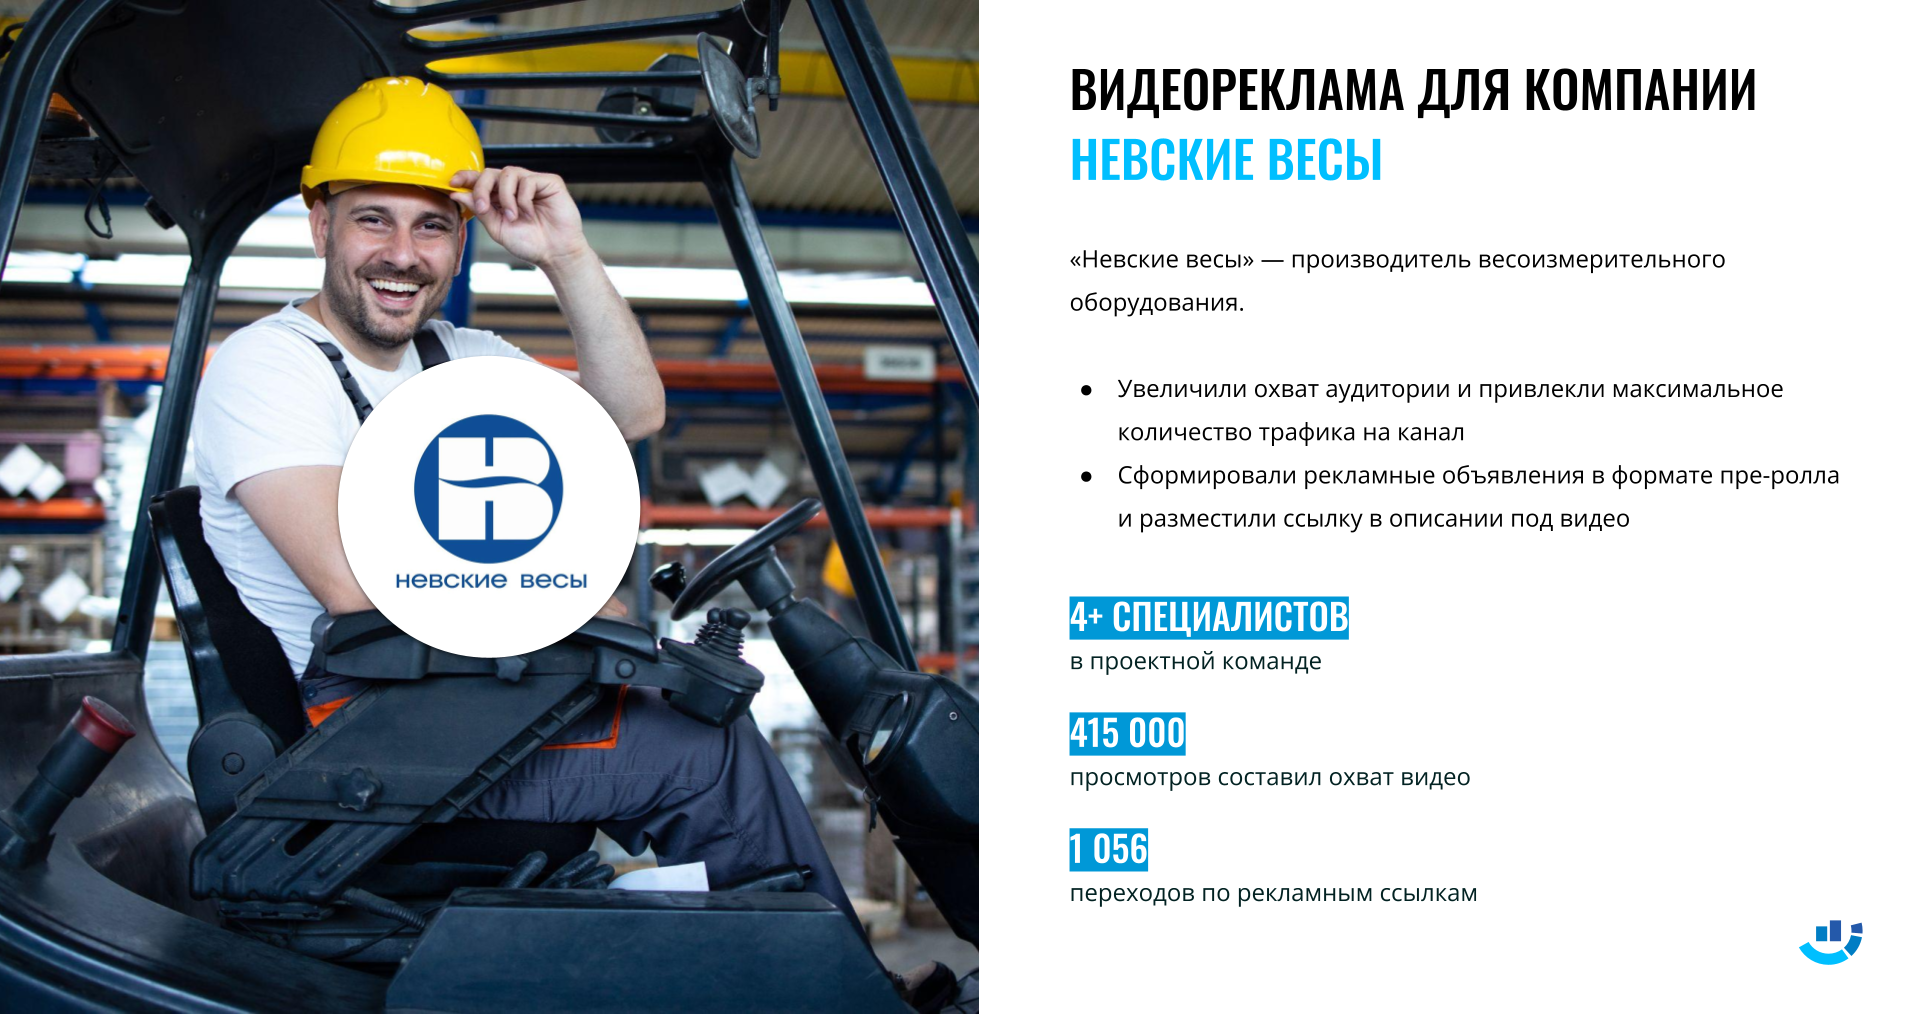 [Кейс] Промышленное производство. Продвижение сайта ведущего российского производителя весового оборудования